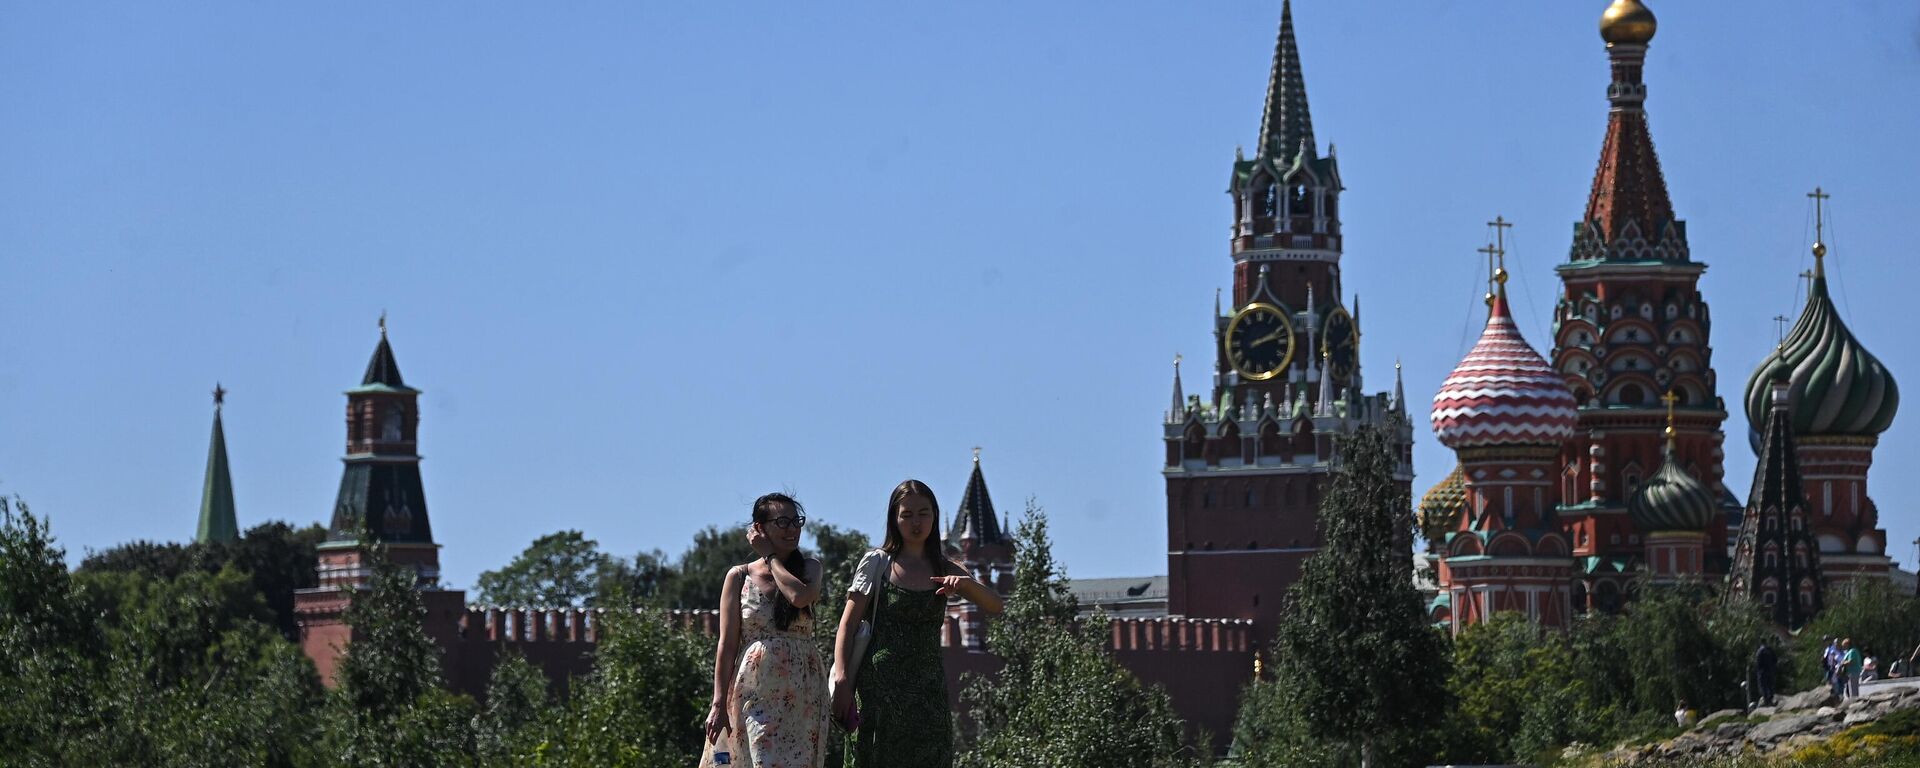 Mulheres passeiam perto do Kremlin em Moscou, Rússia, foto publicada em 2 de julho de 2022 - Sputnik Brasil, 1920, 31.07.2022